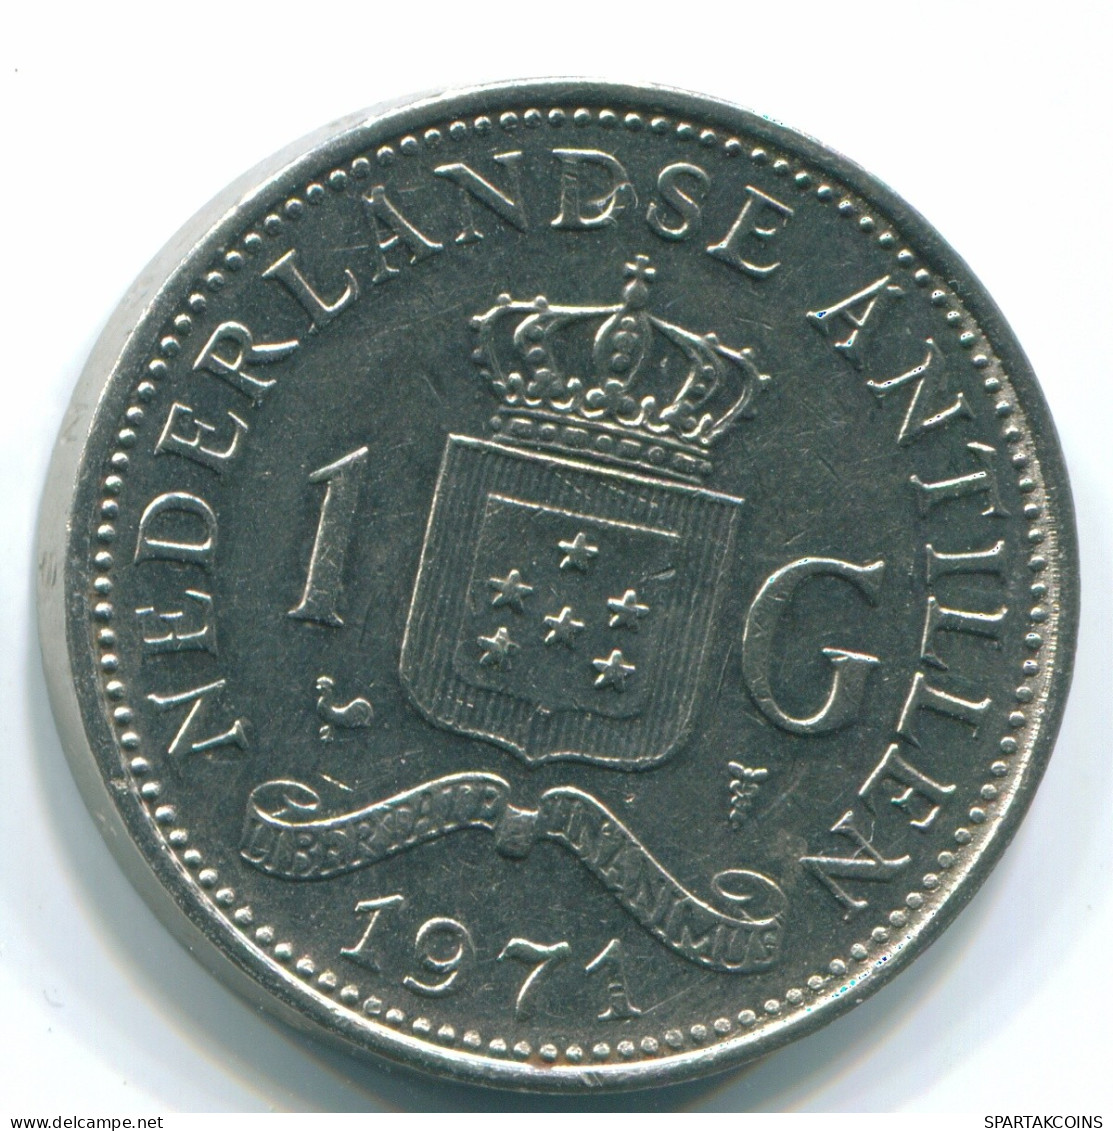 1 GULDEN 1971 NIEDERLÄNDISCHE ANTILLEN Nickel Koloniale Münze #S11969.D.A - Nederlandse Antillen